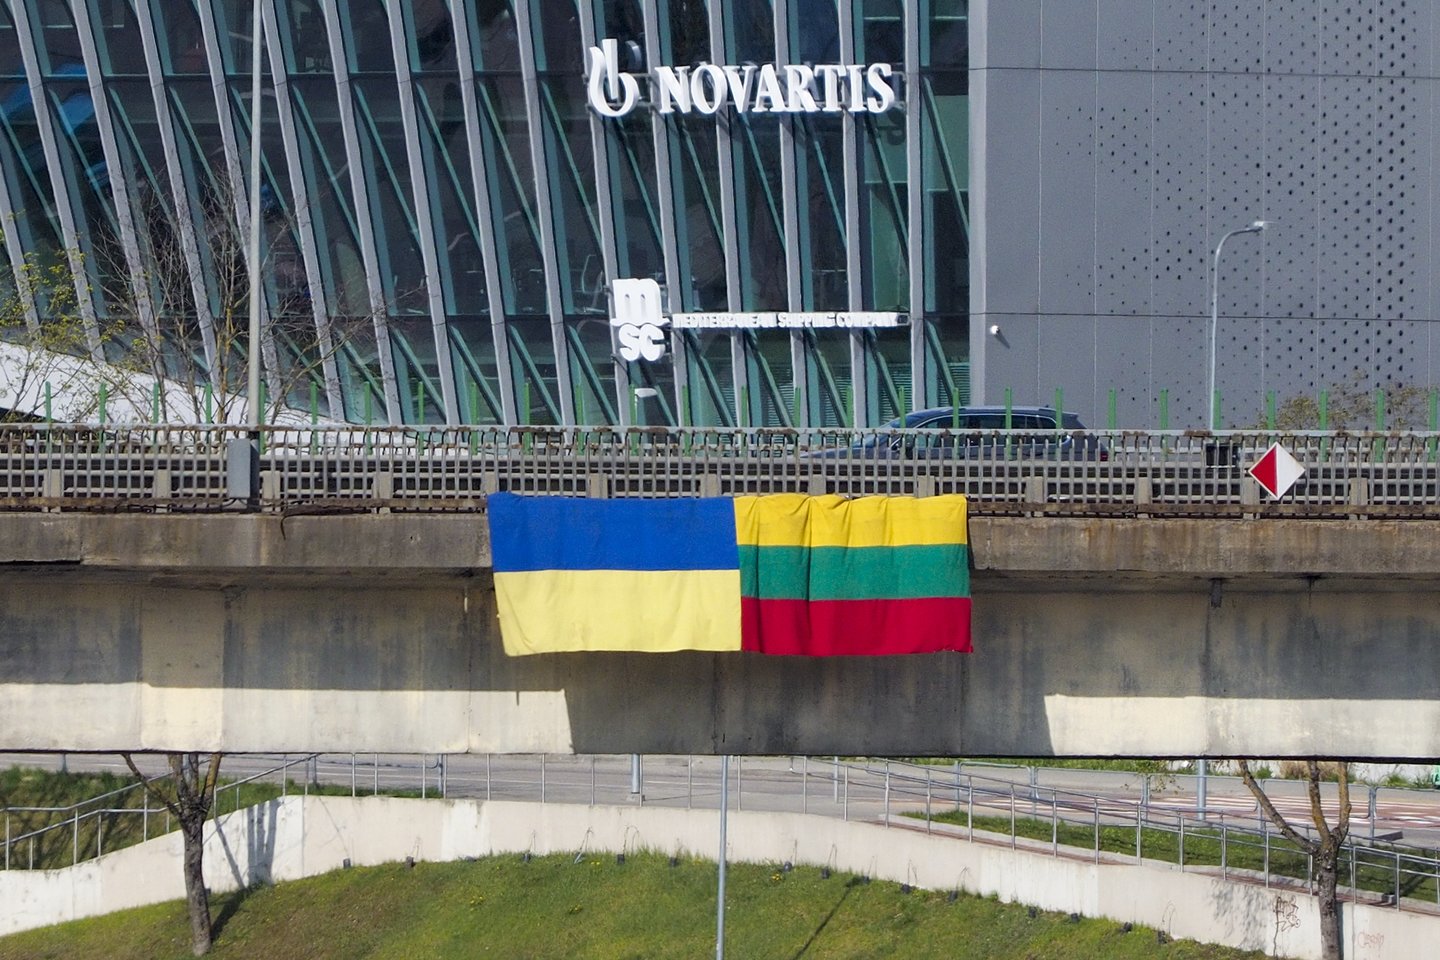 Balkone pakabinta Ukrainos vėliava užtraukė namo pirmininko rūstybę: grasino susidorojimu.<br>V.Ščiavinsko asociatyvi nuotr.